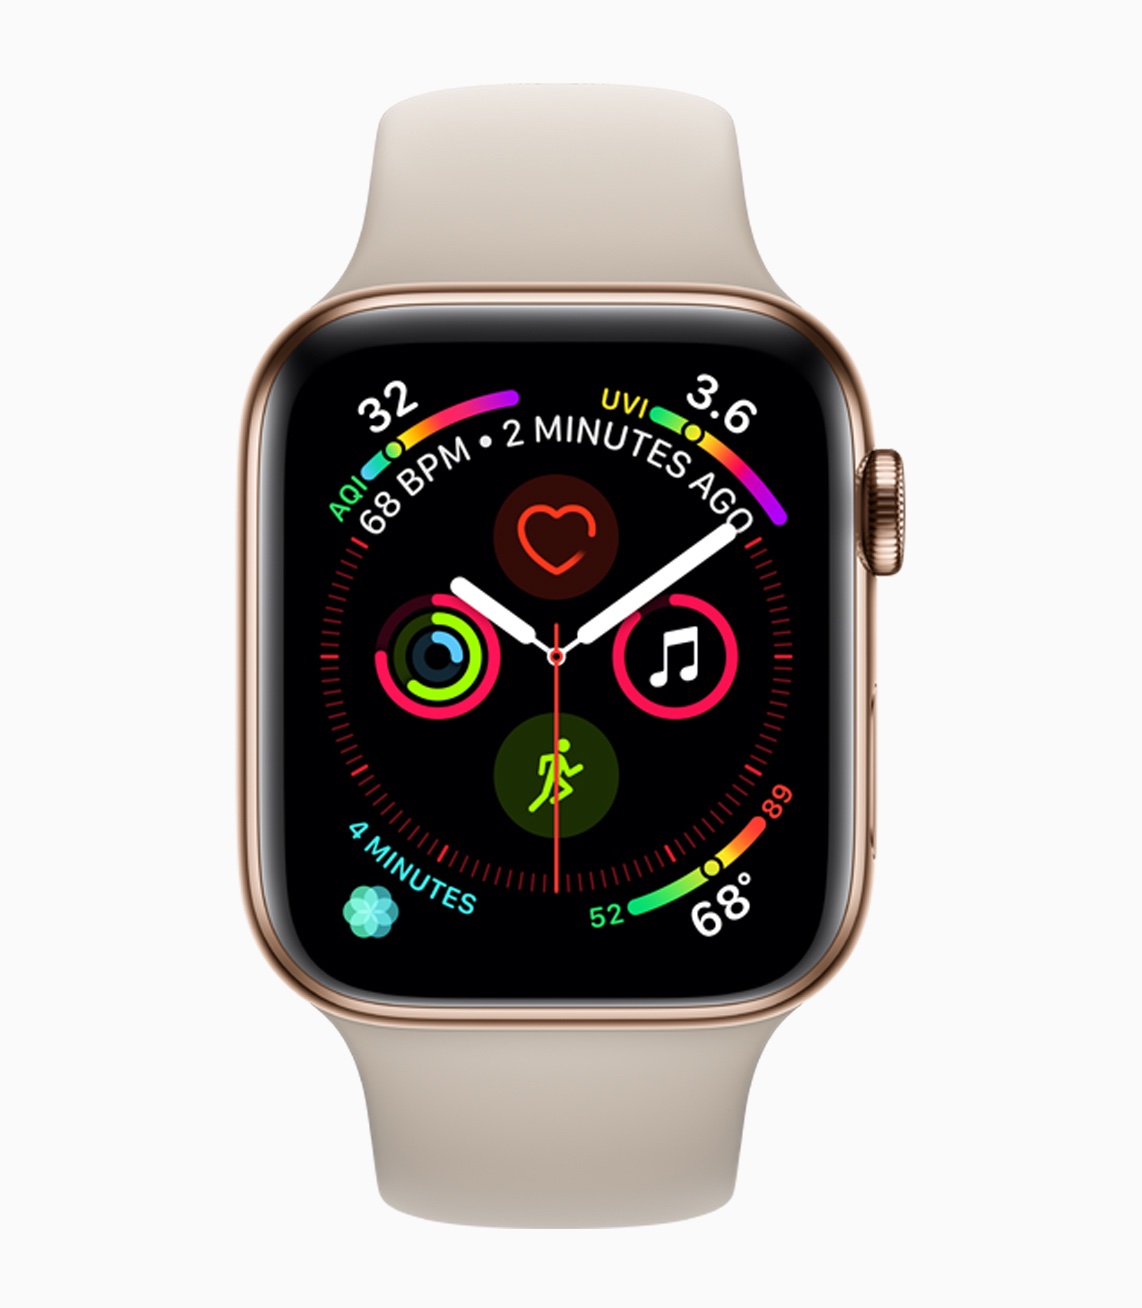 Apple debuts Apple Watch Series 4